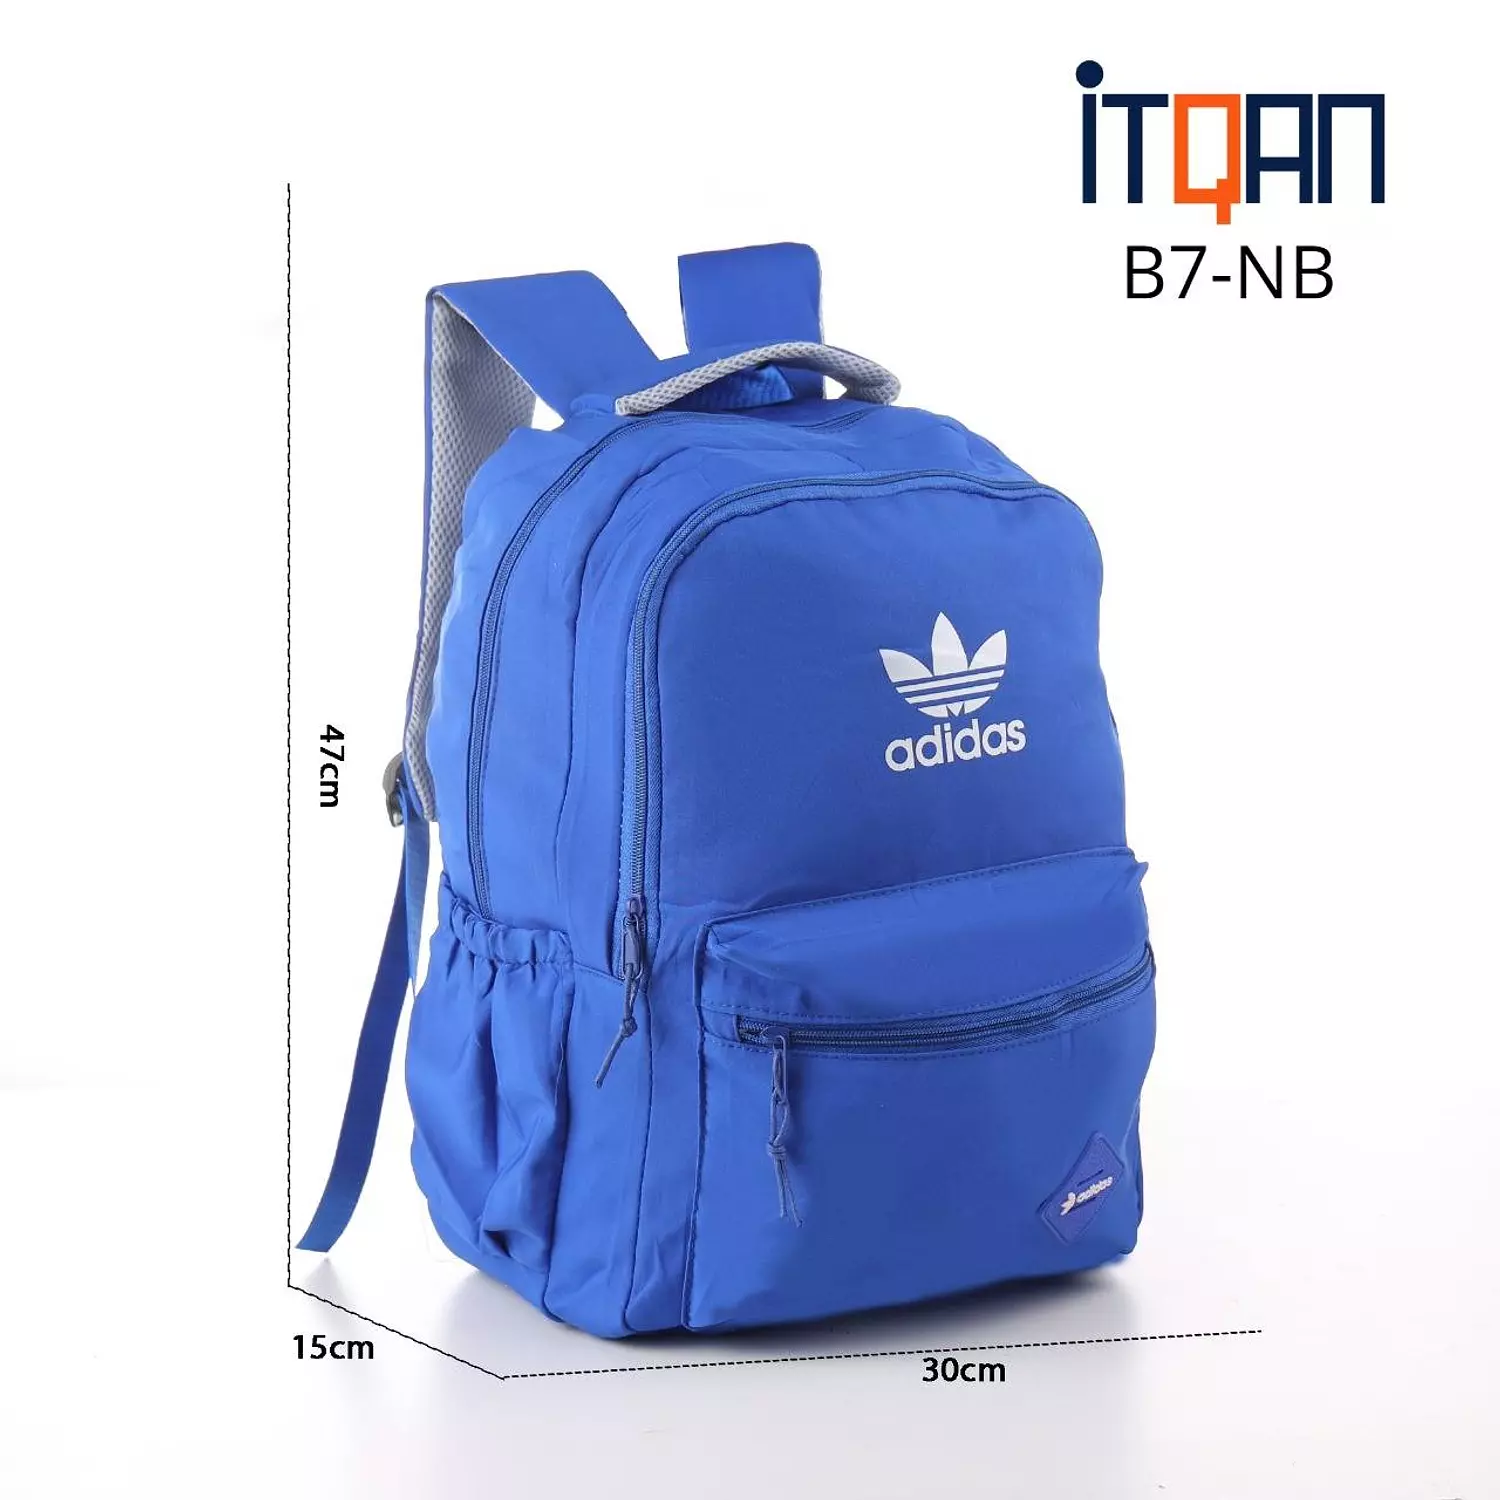 Adidas Waterproof Bag 3